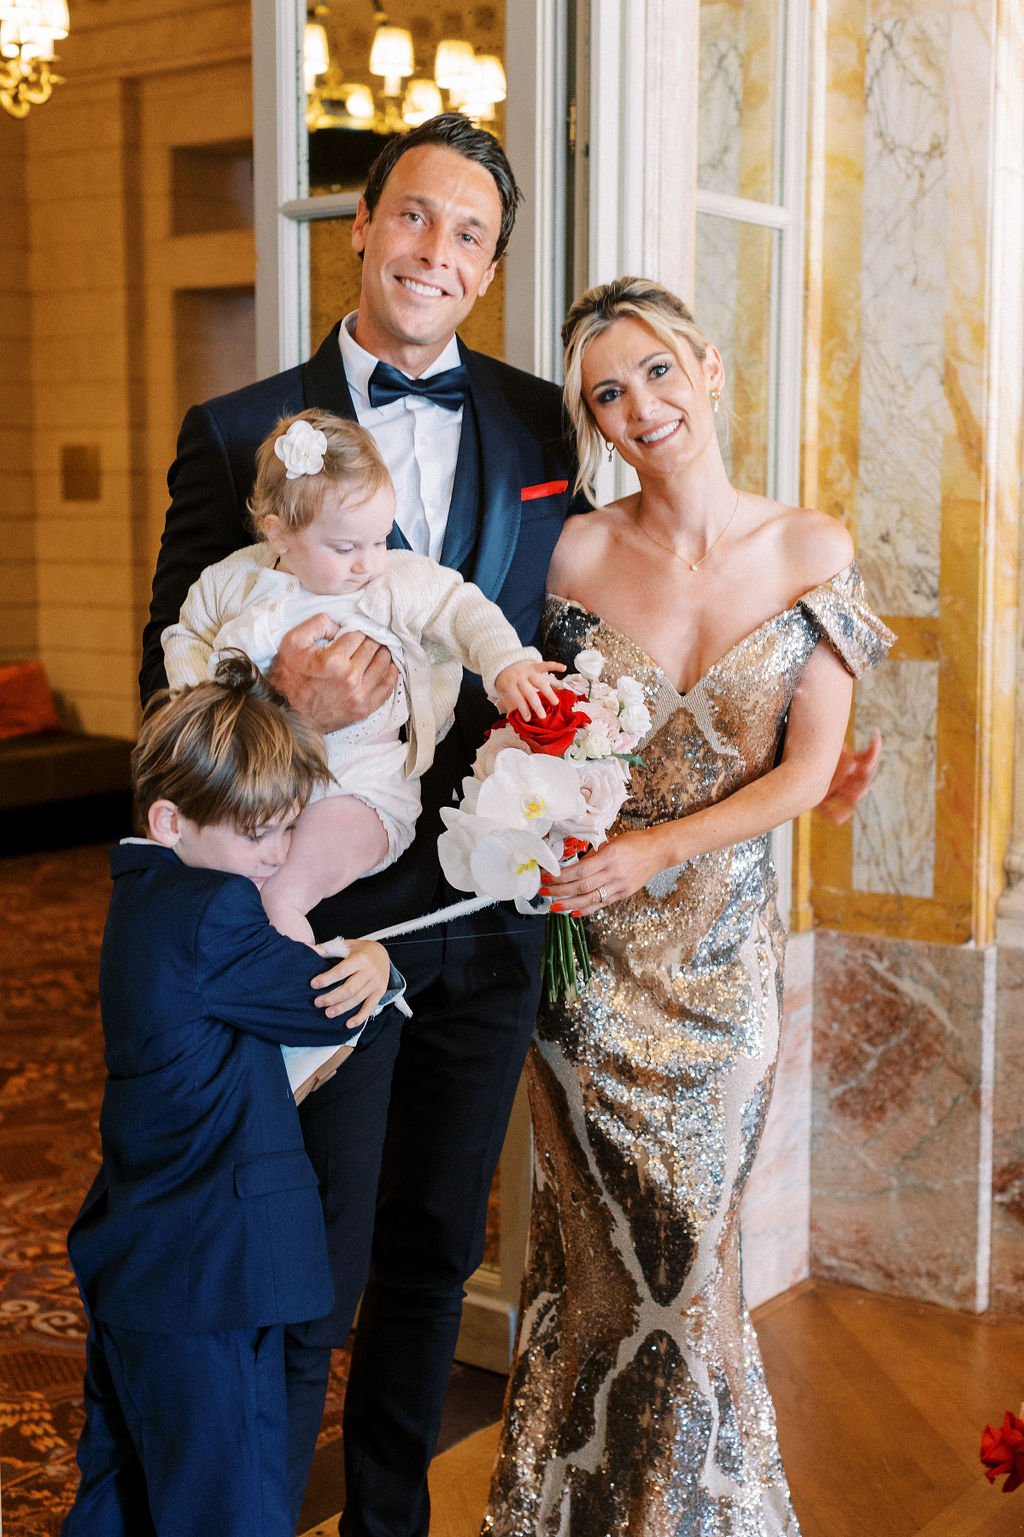 Luxury wedding elopement with children of bride and groom